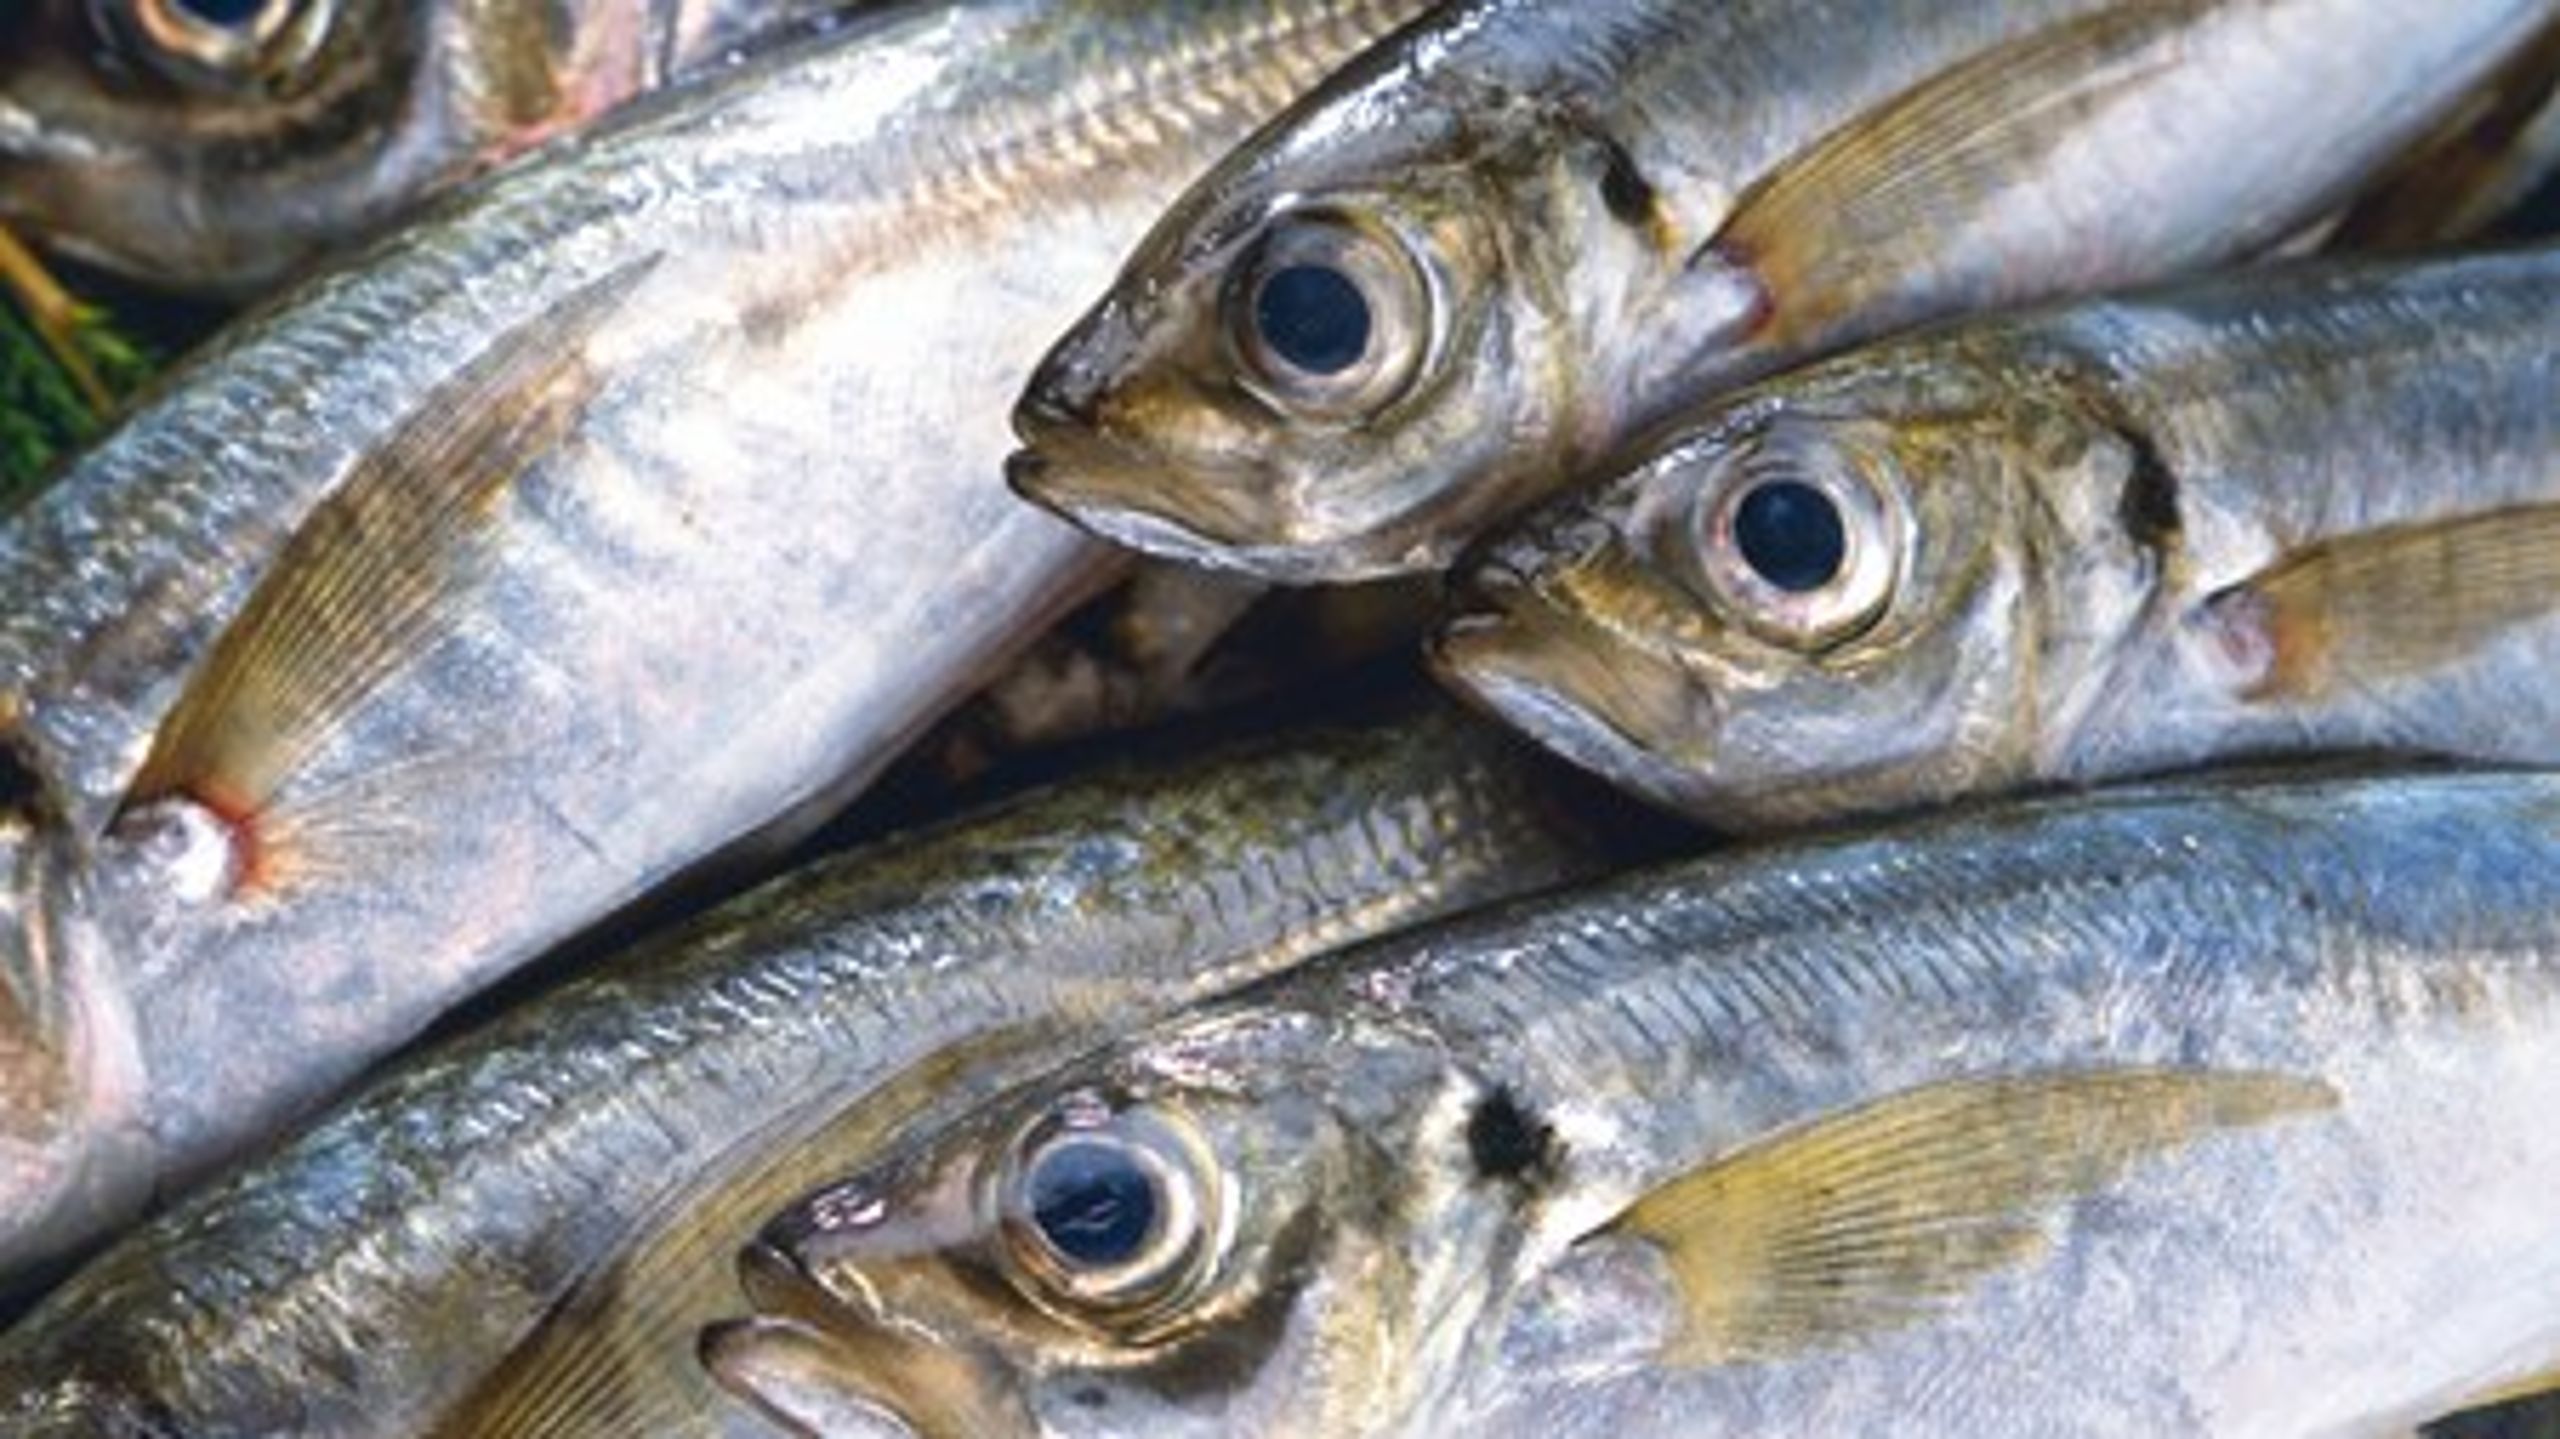 Målsætningen for FSK er, at 30 procent af de vigtige kystfiskearter,&nbsp;som torsk, tunge og rødspætte, skal fanges af det skånsomme kystfiskeri.